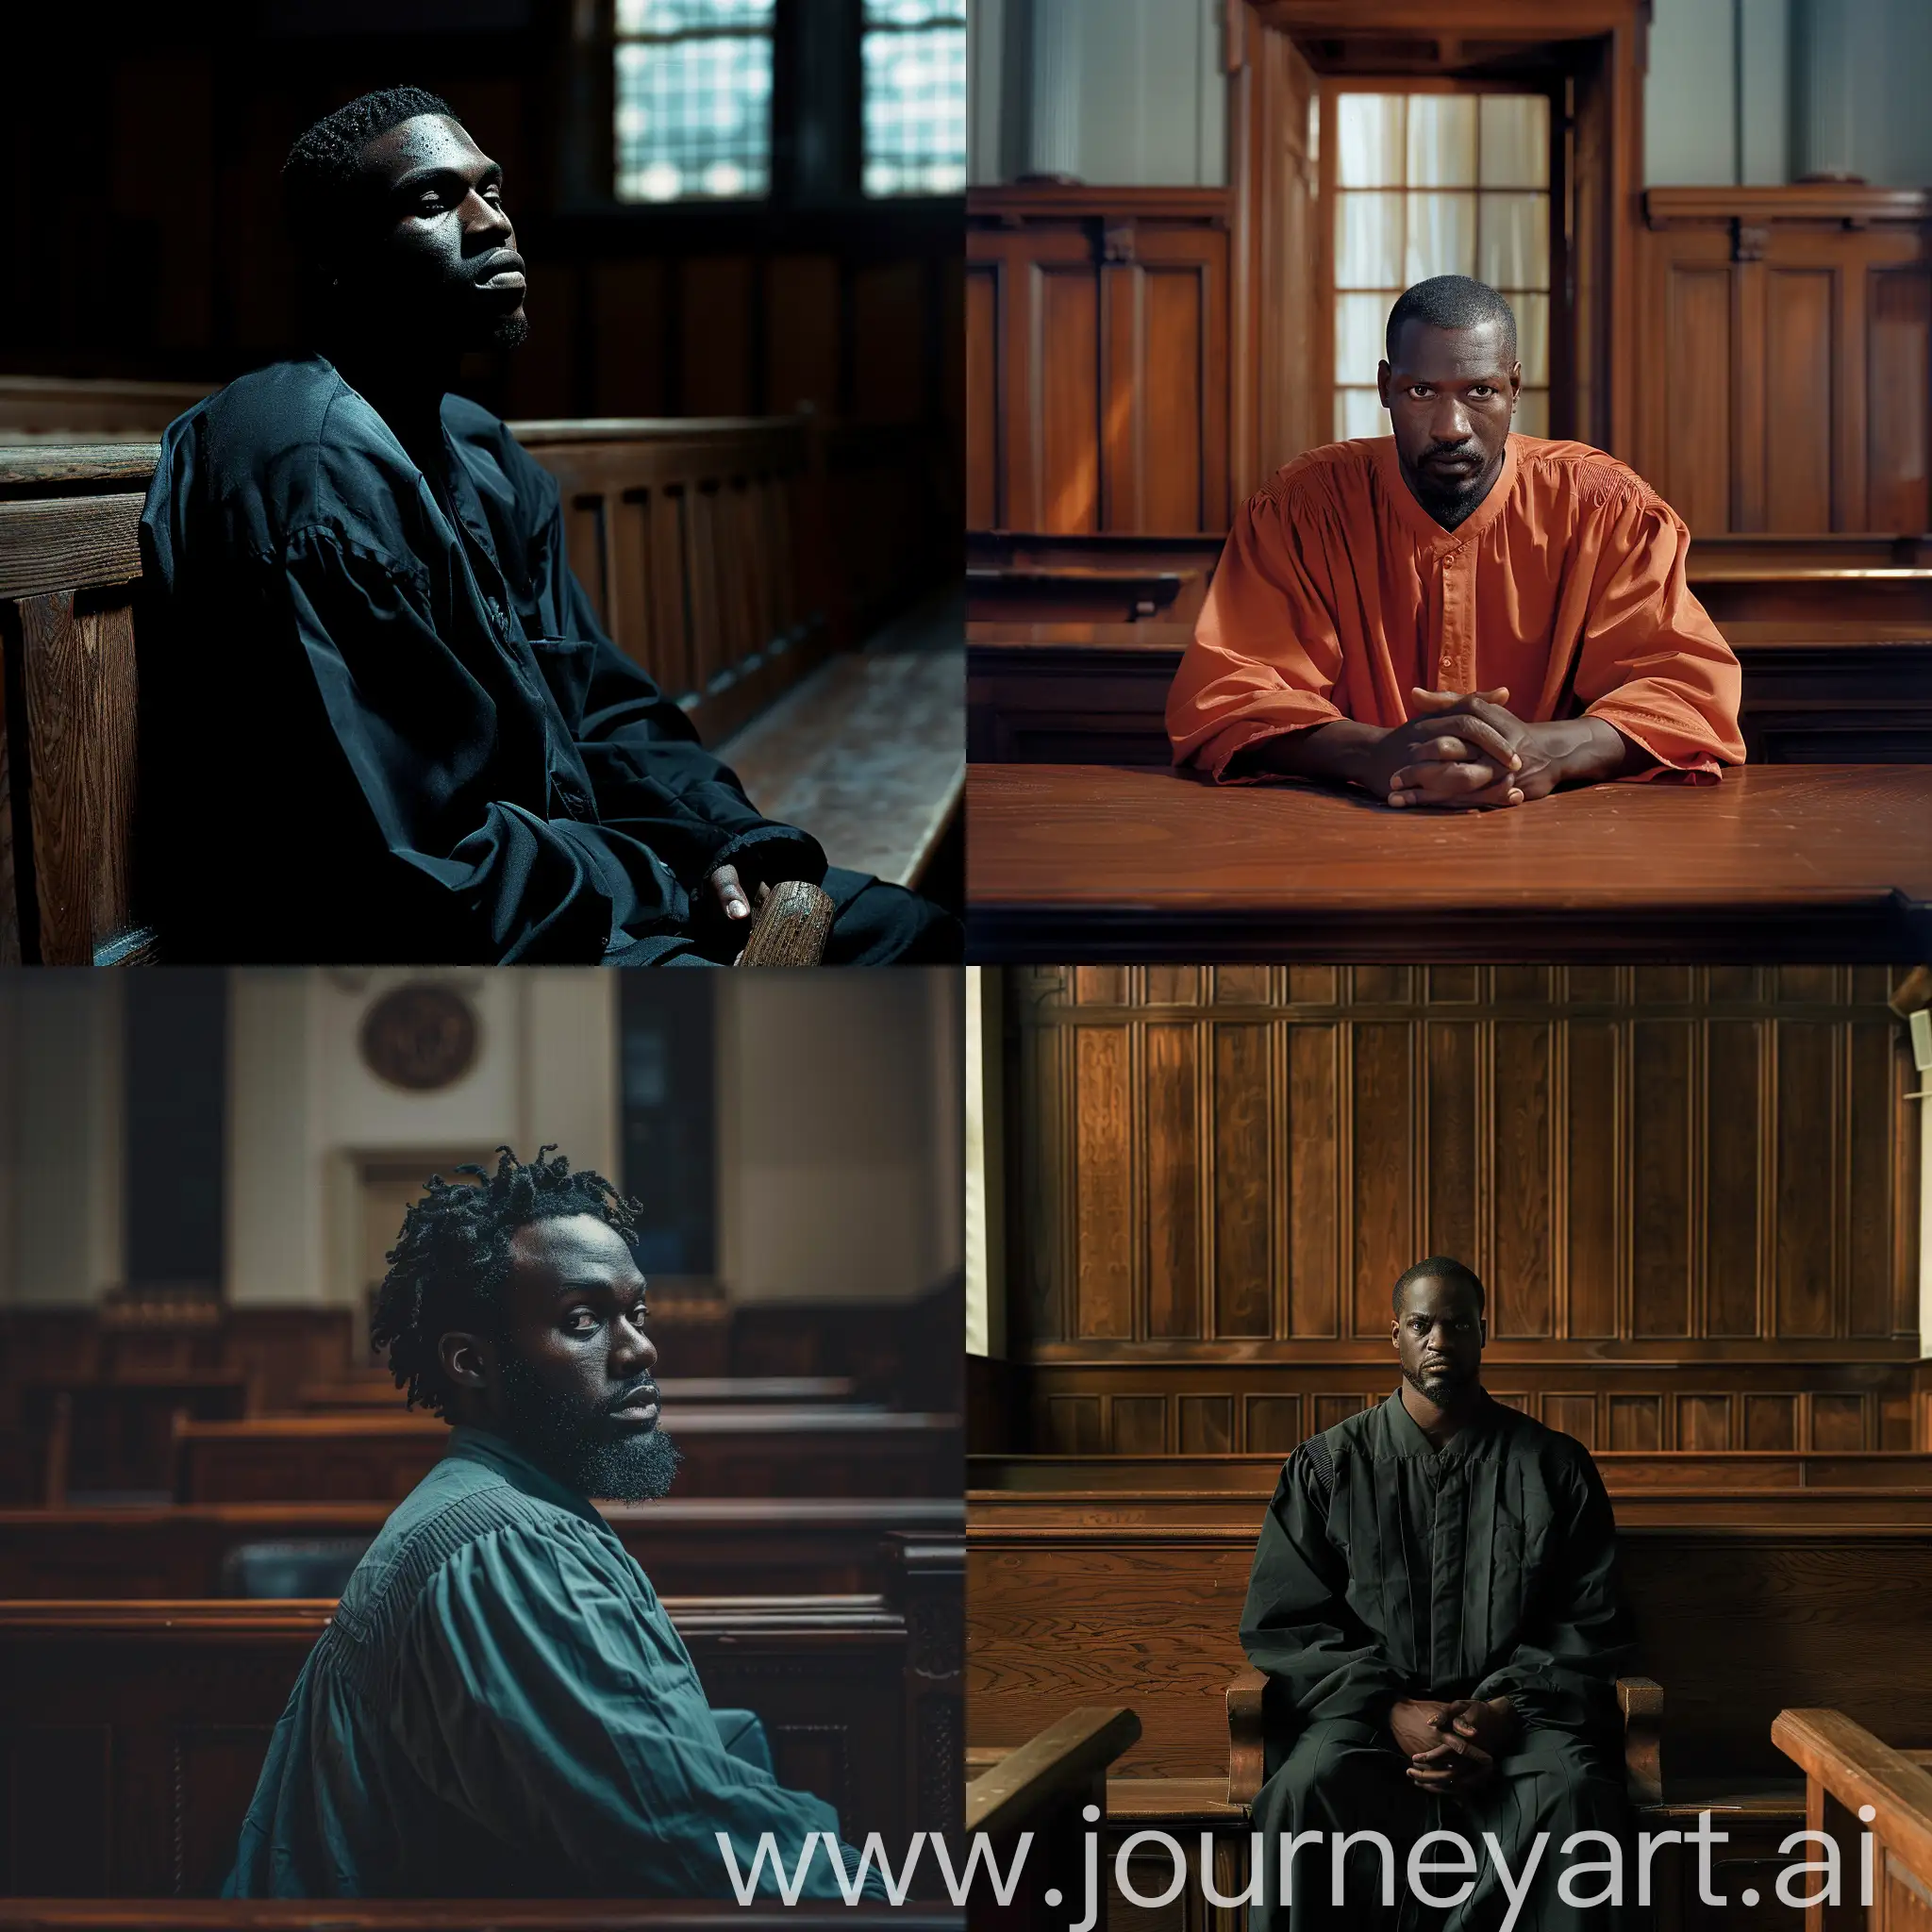 HighQuality-Catalog-Pose-of-Black-Prisoner-in-Courtroom